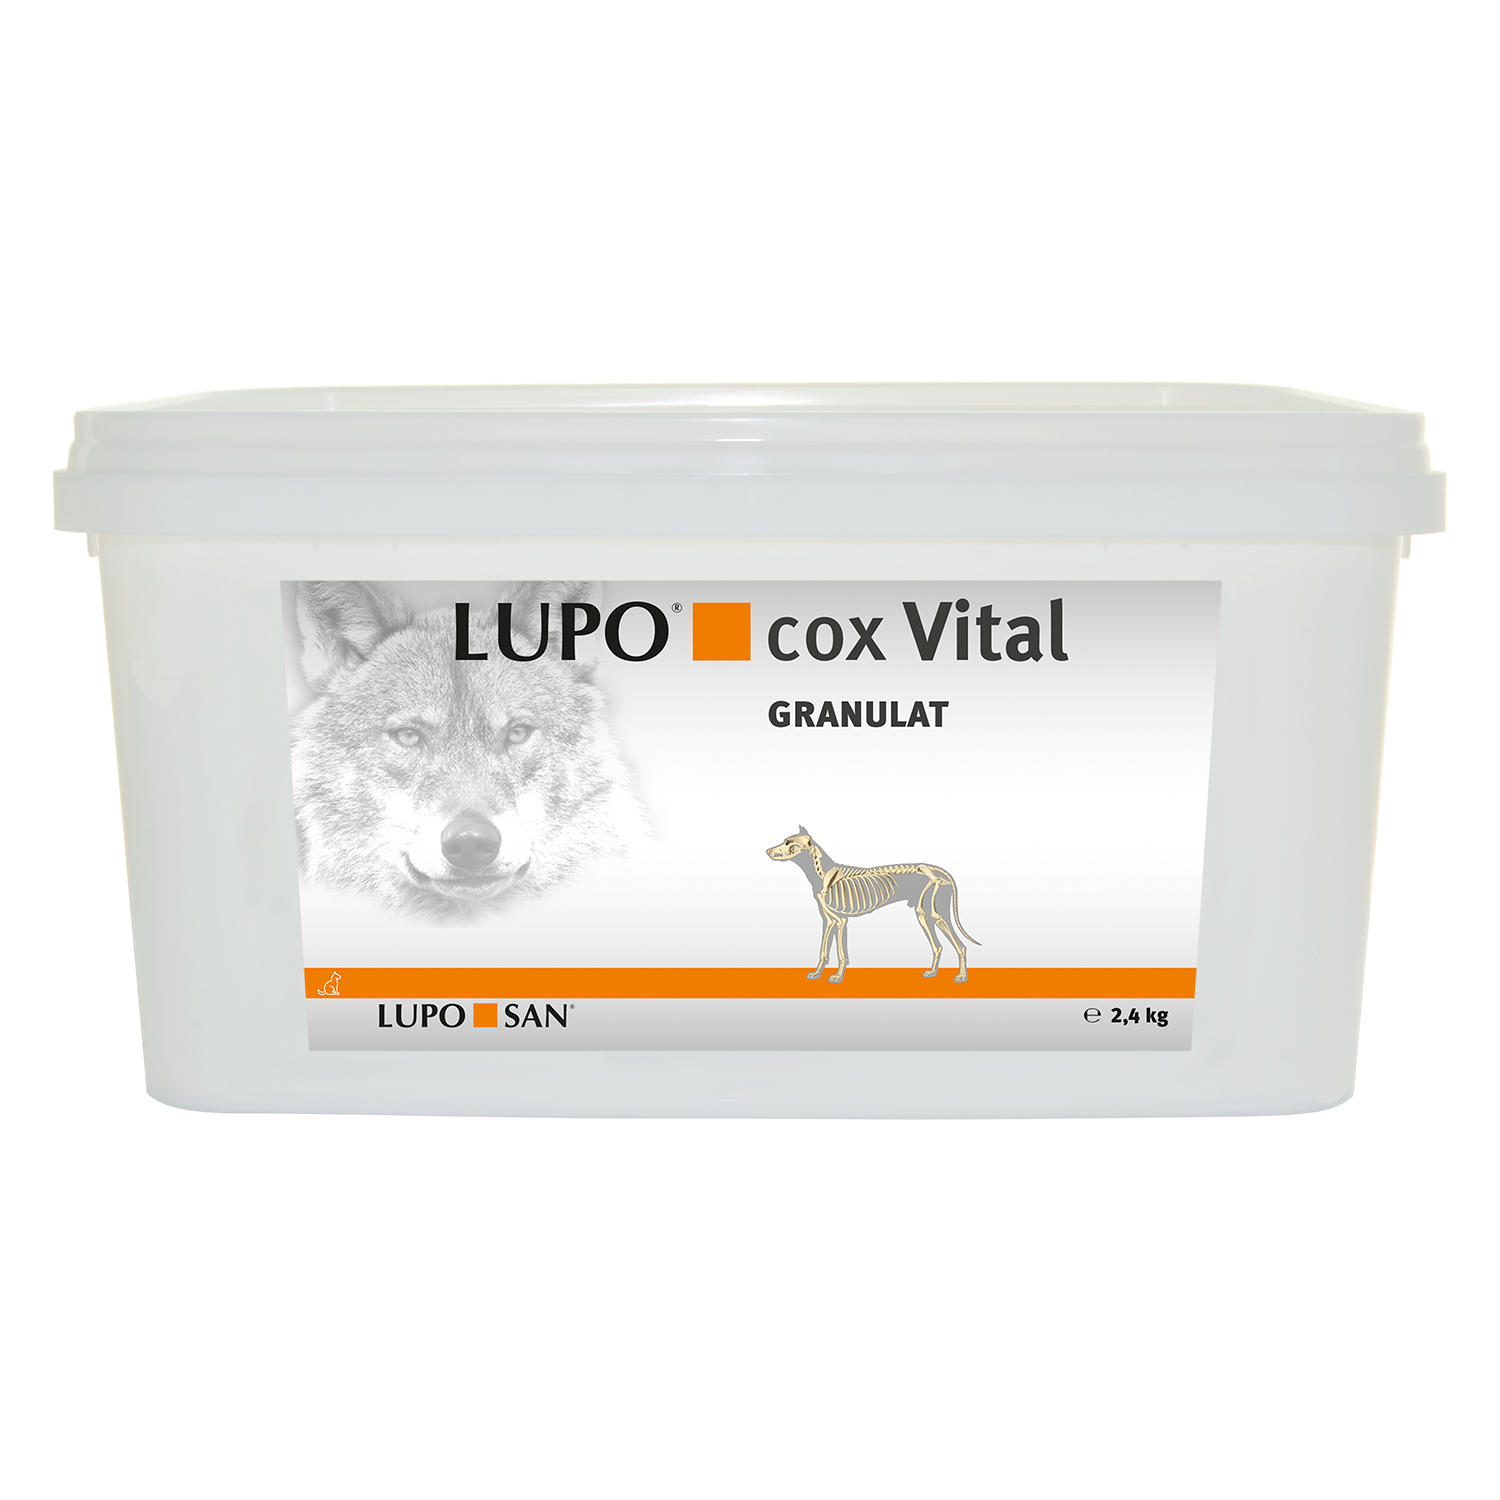 LUPO COX VITAL 2,4 kg Eimer